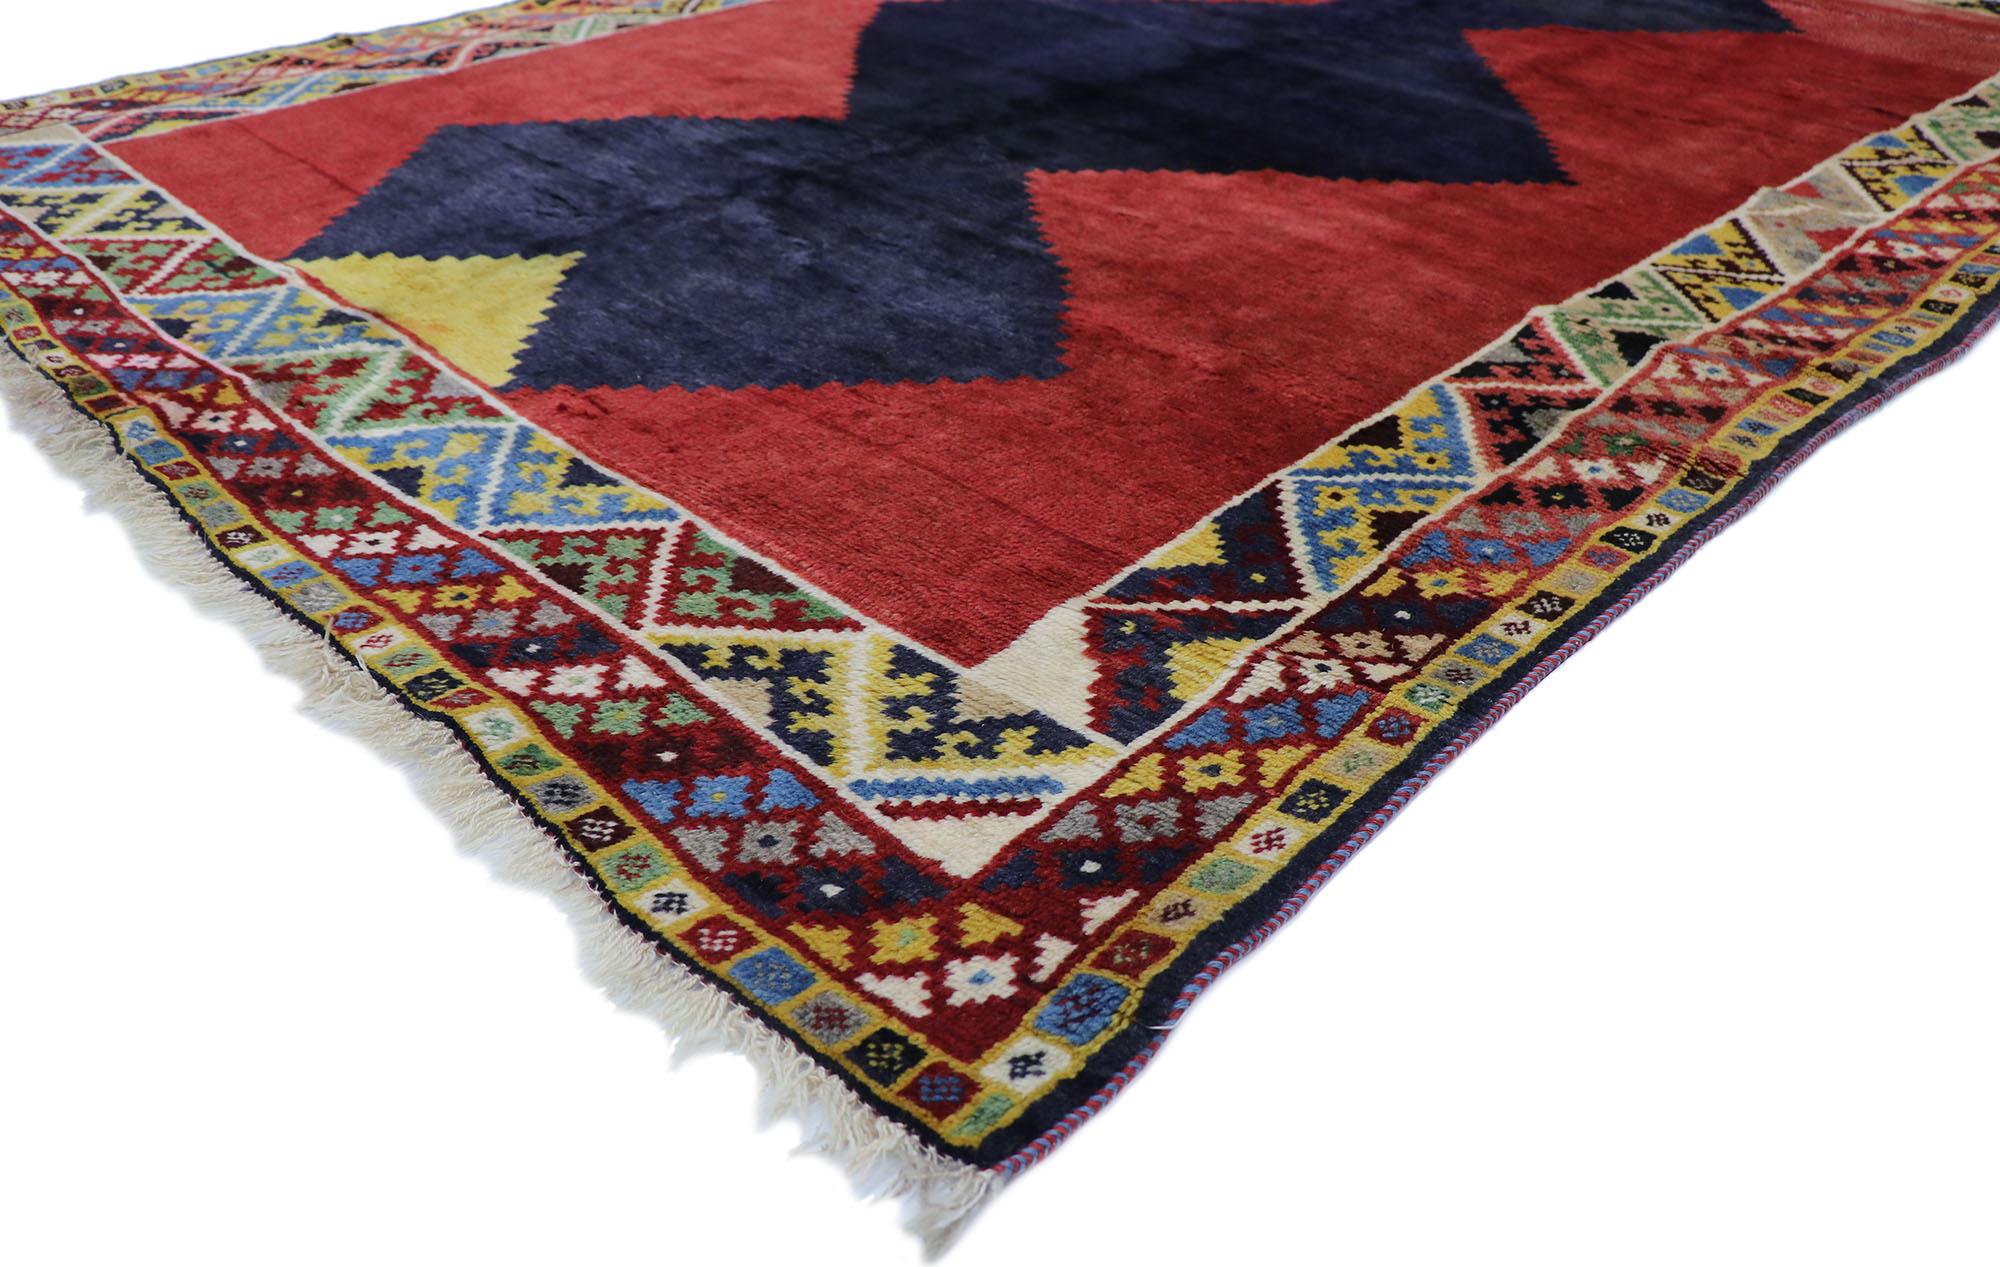 78083 tapis vintage Persian shiraz avec style Mid-Century Modern Tribal 06'09 x 09'09. Plein de petits détails et d'un design expressif audacieux combiné à des couleurs vibrantes et à un style tribal, ce tapis persan vintage Shiraz en laine noué à